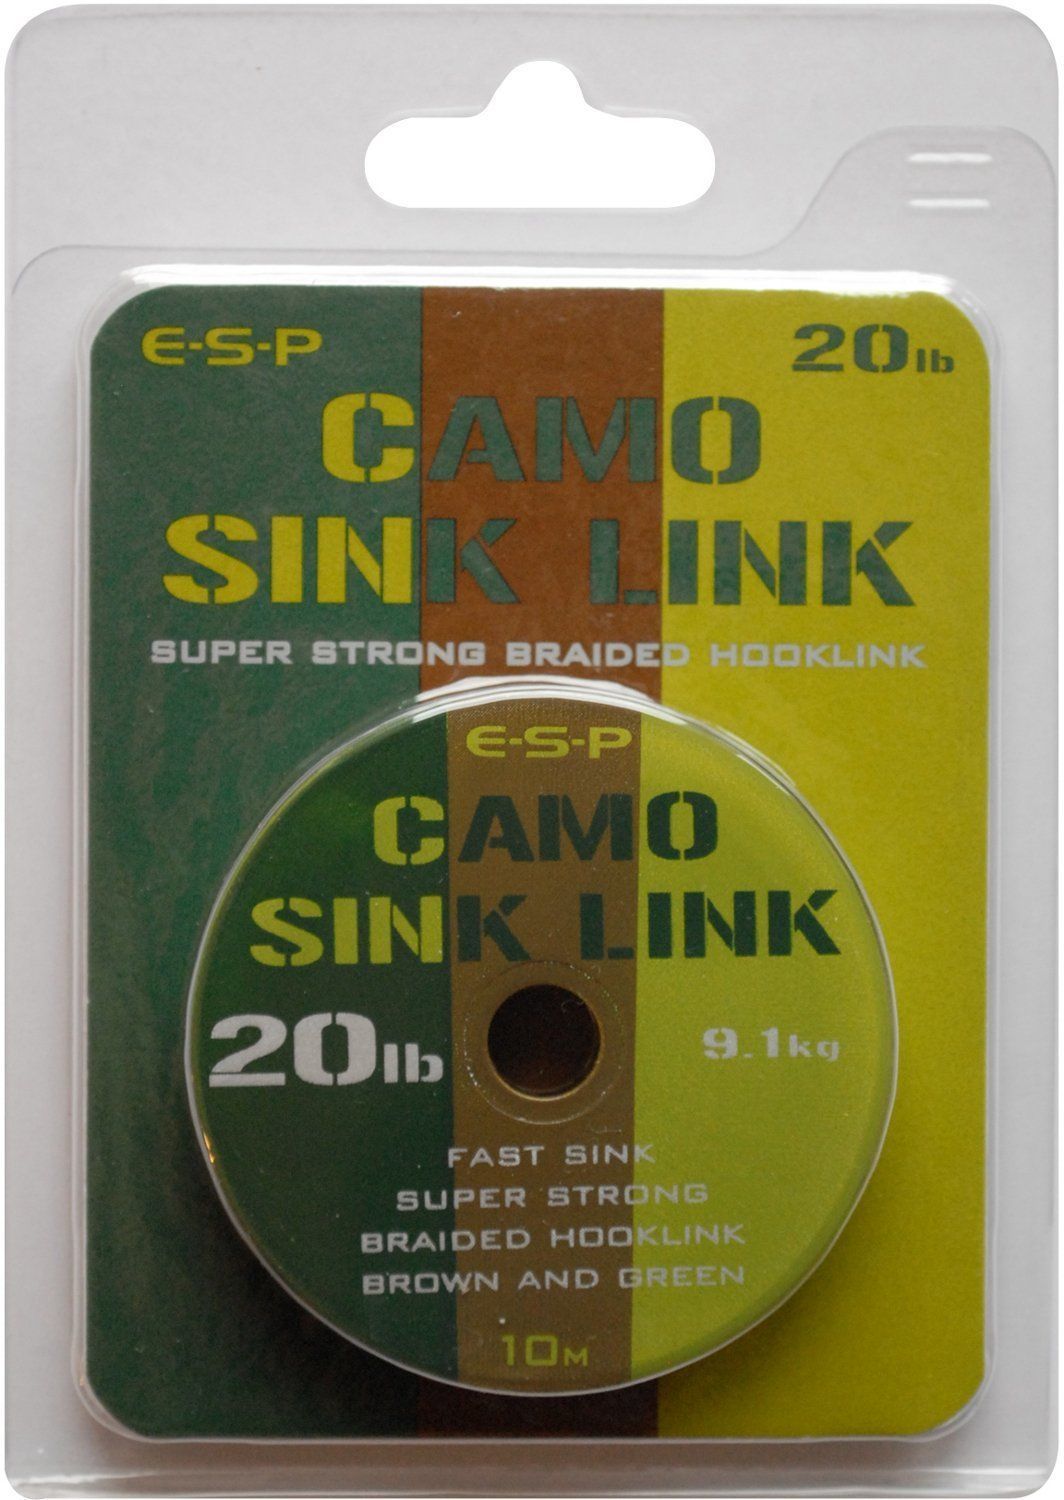 Поводковый материал E-S-P CAMO SINK LINK - Camo Brown & Camo Green  / 10m, 15lb